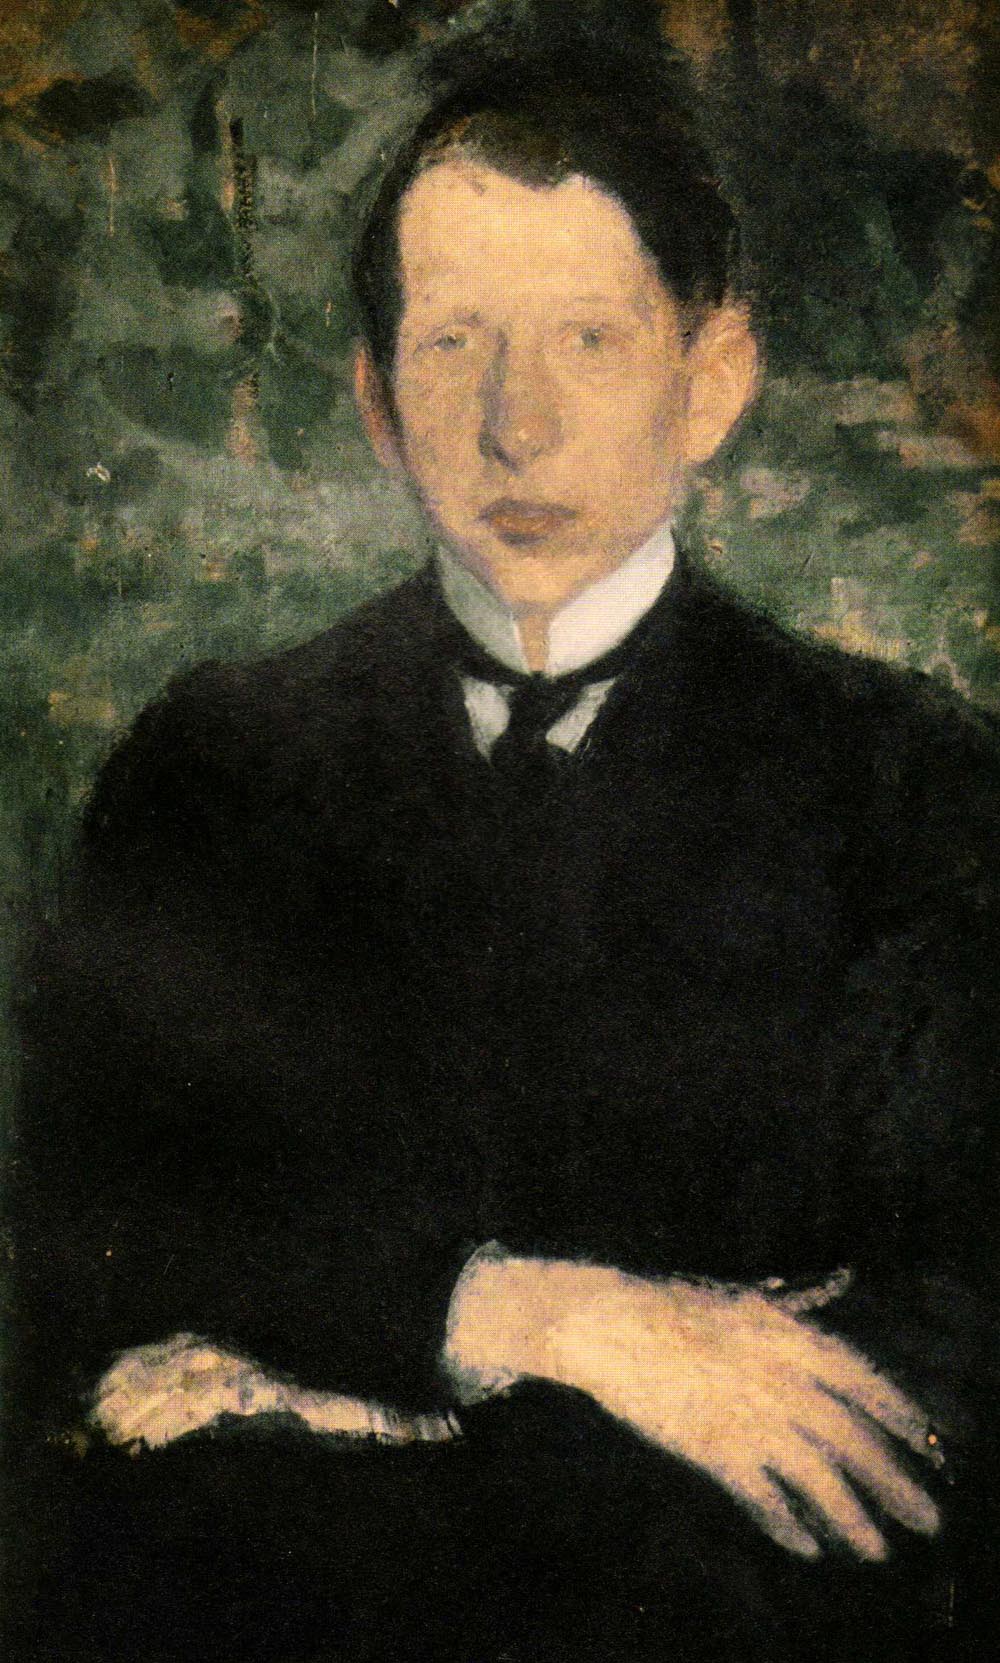 Portret Georgesa Danysza (drugiego syna Jana Danysza)